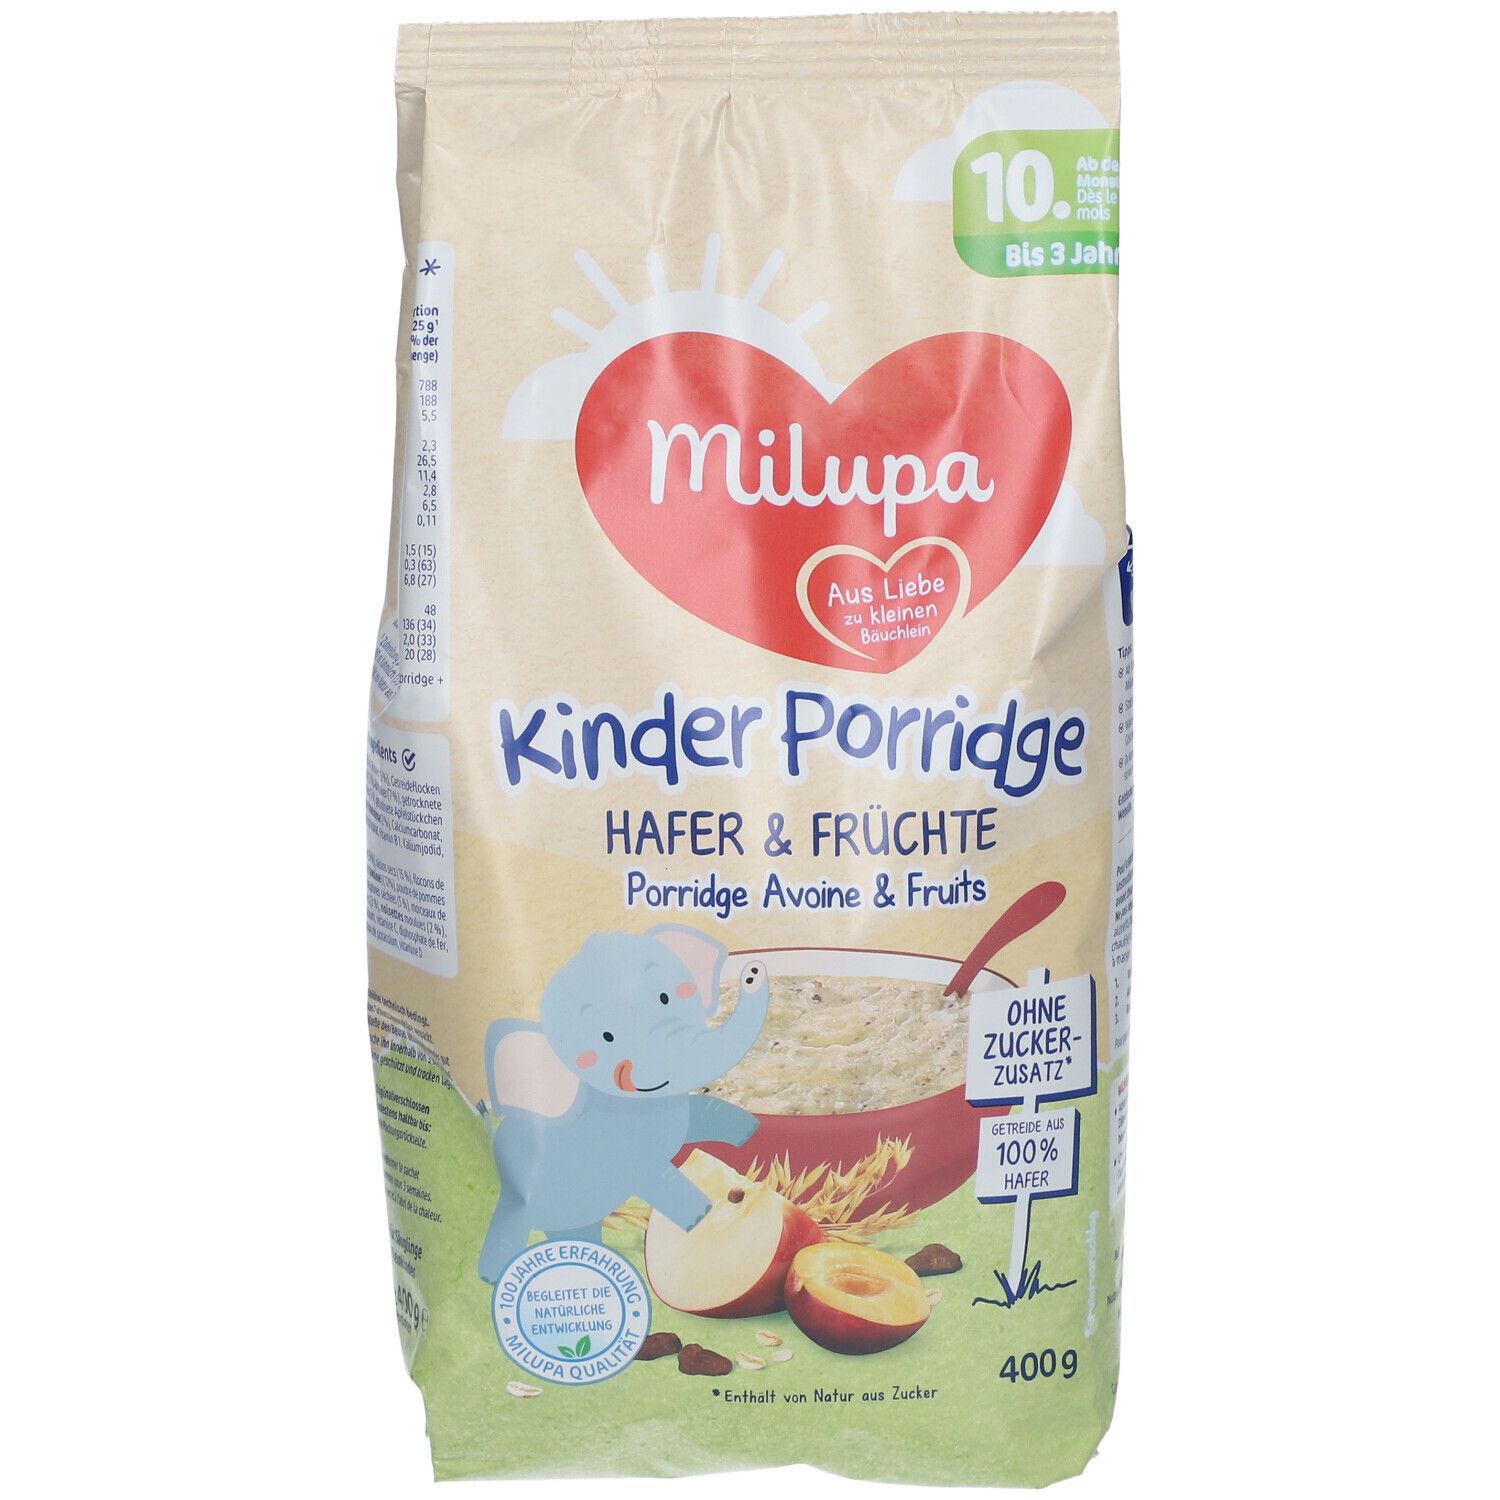 Milupa Kinder Porridge Hafer & Früchte ab dem 10 Monat bis 3 Jahre